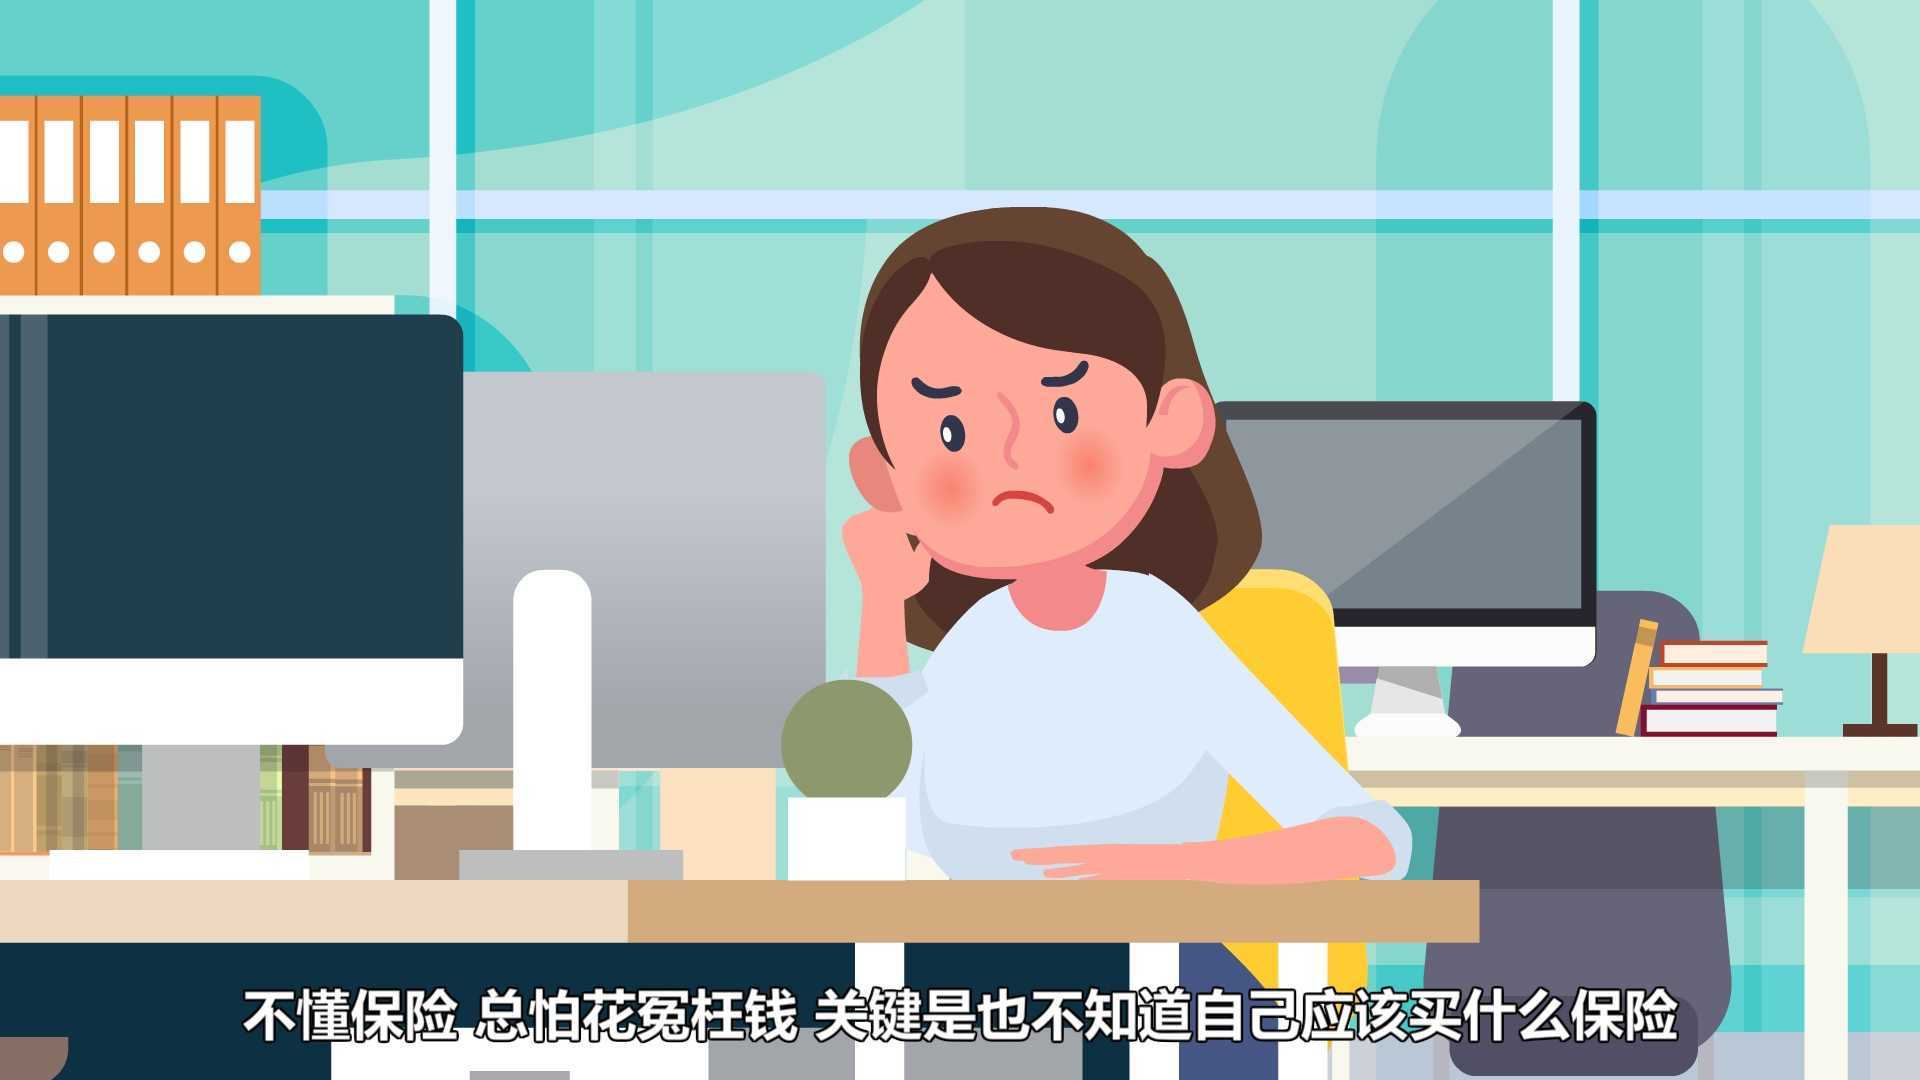 中国人保财险《中国人保财险之专属保单》MG动画